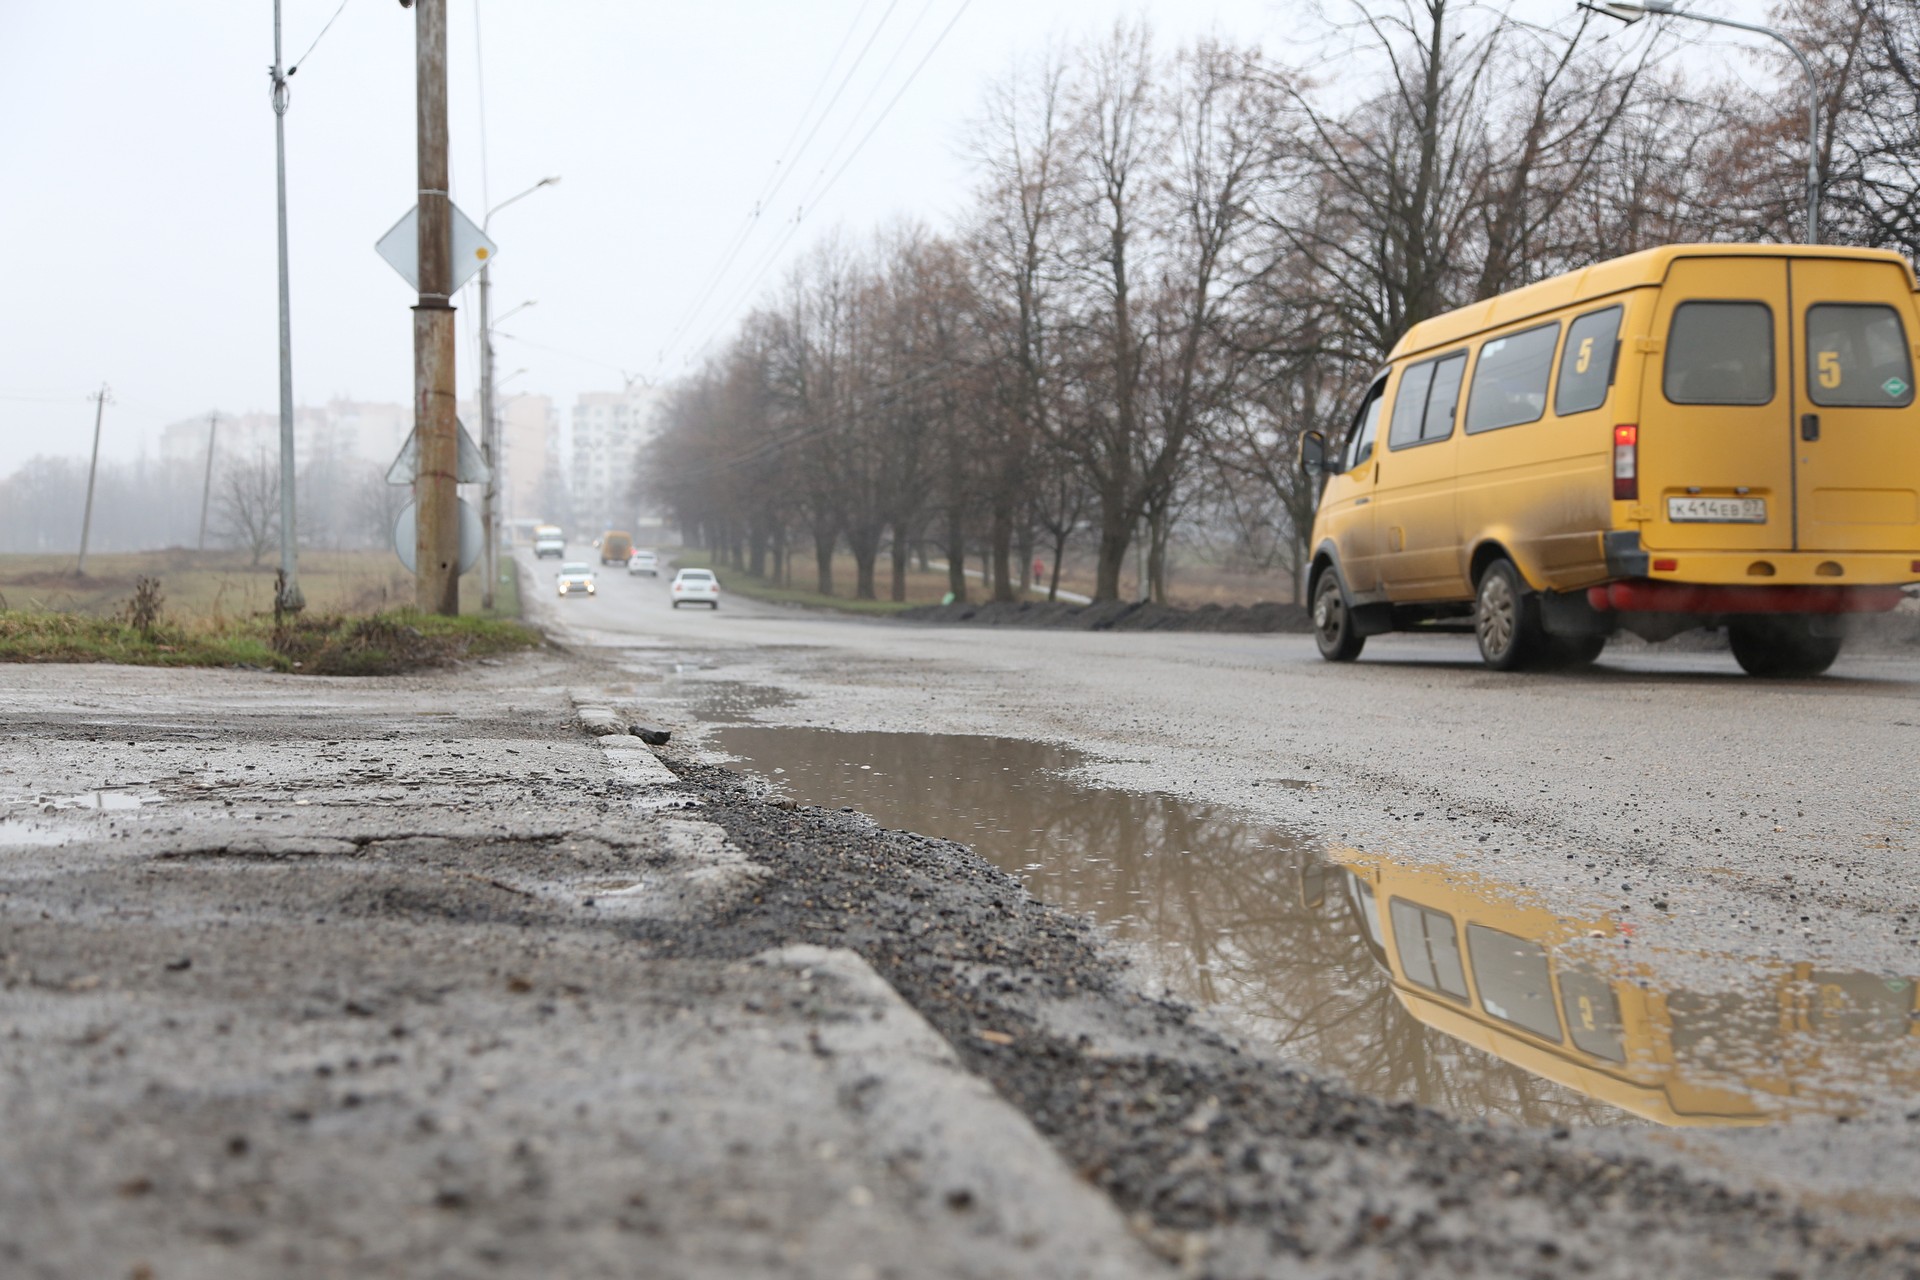 В Нальчике исправляют дорожные дефекты, обнаруженные в ходе инспекции 23 марта